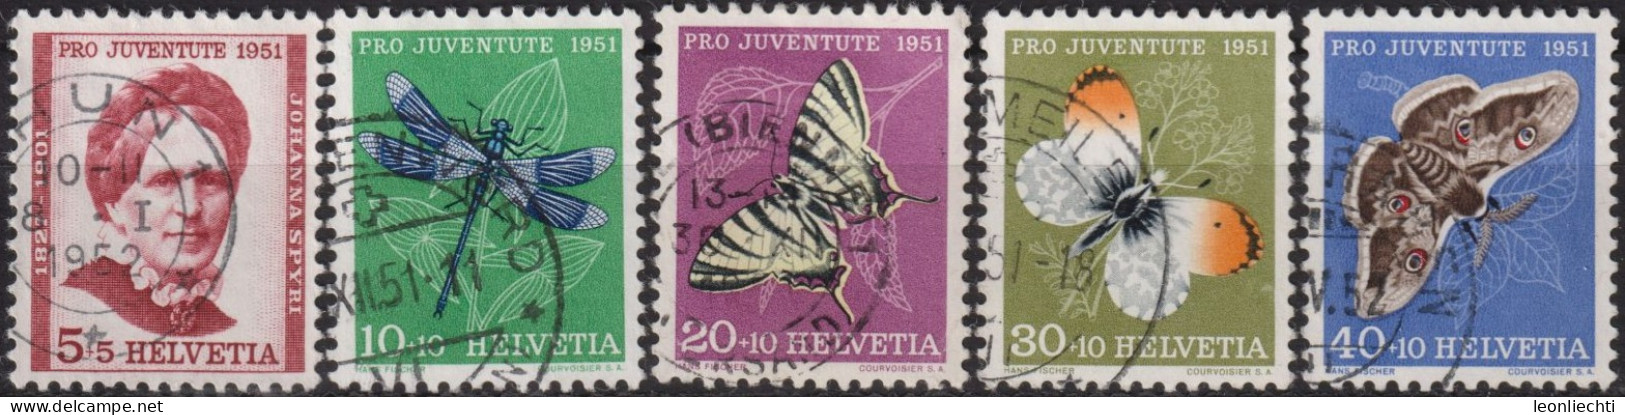 1951 Schweiz Pro Juventute ° Zum:CH J138-J142,Yt:CH 512-516, Mi:CH 561-265, Insekten Und Johanna Spyri - Gebraucht